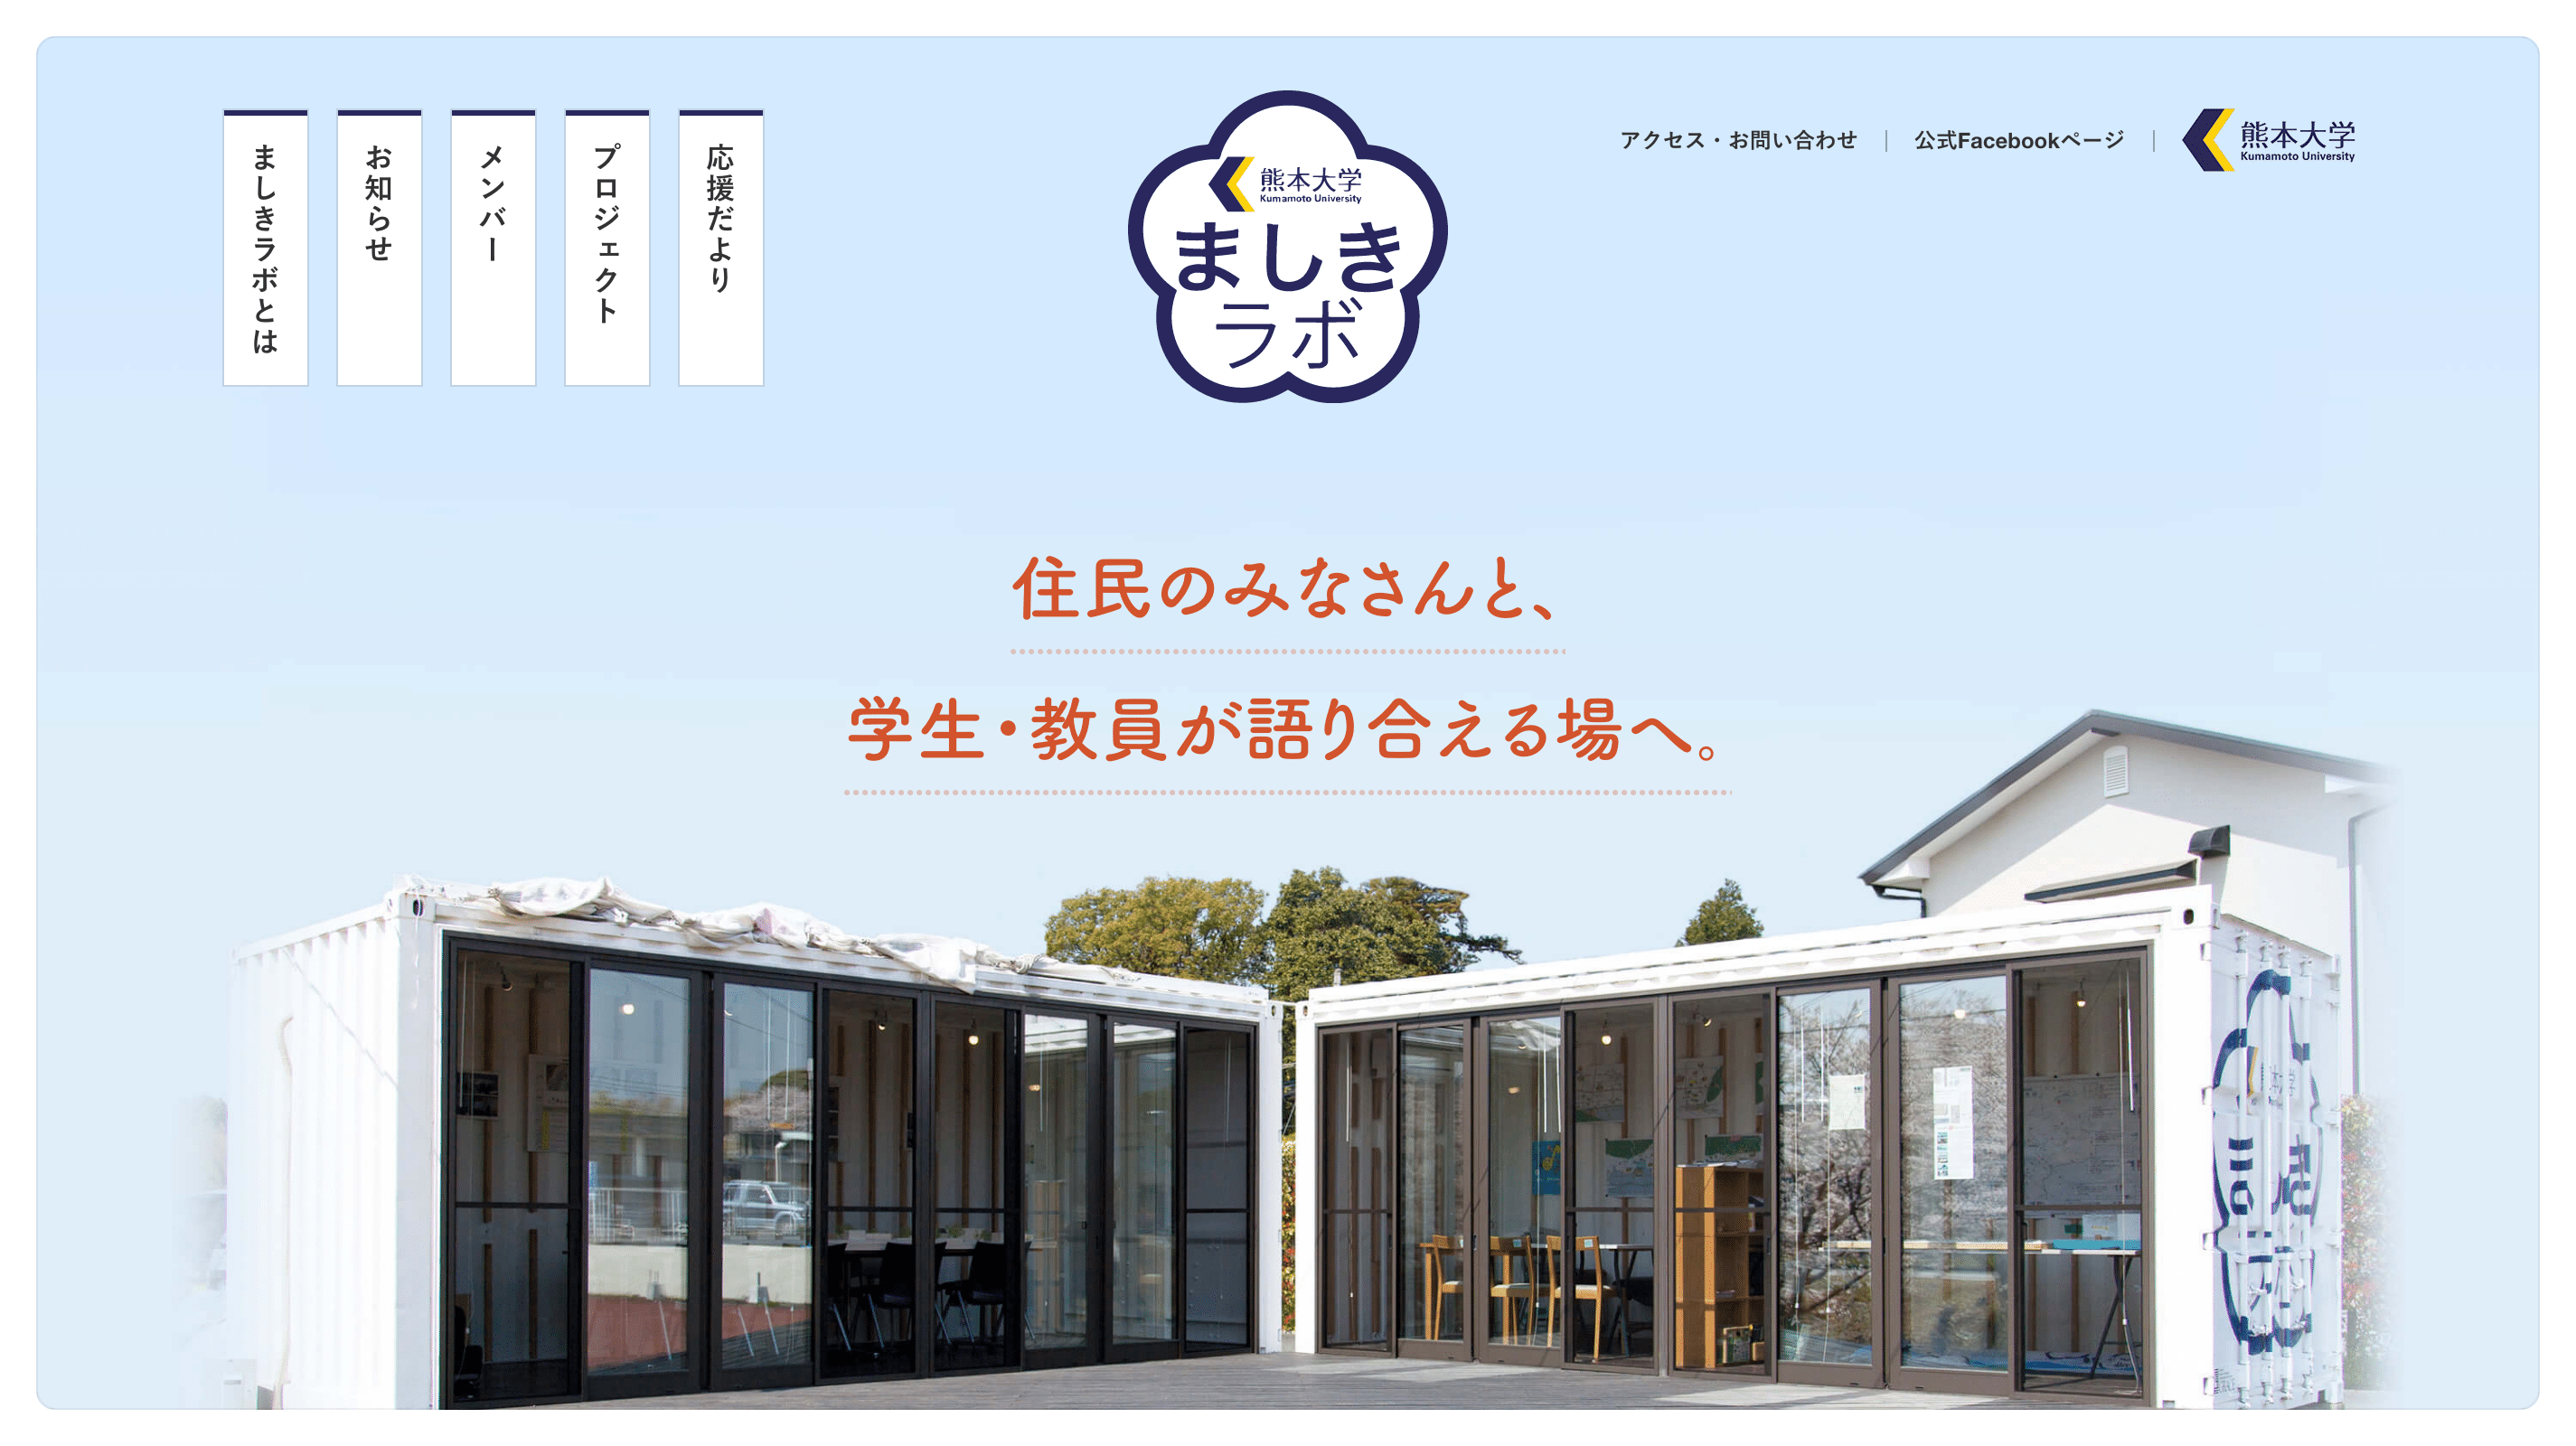 熊本大学 ましきラボサイトのパソコン表示